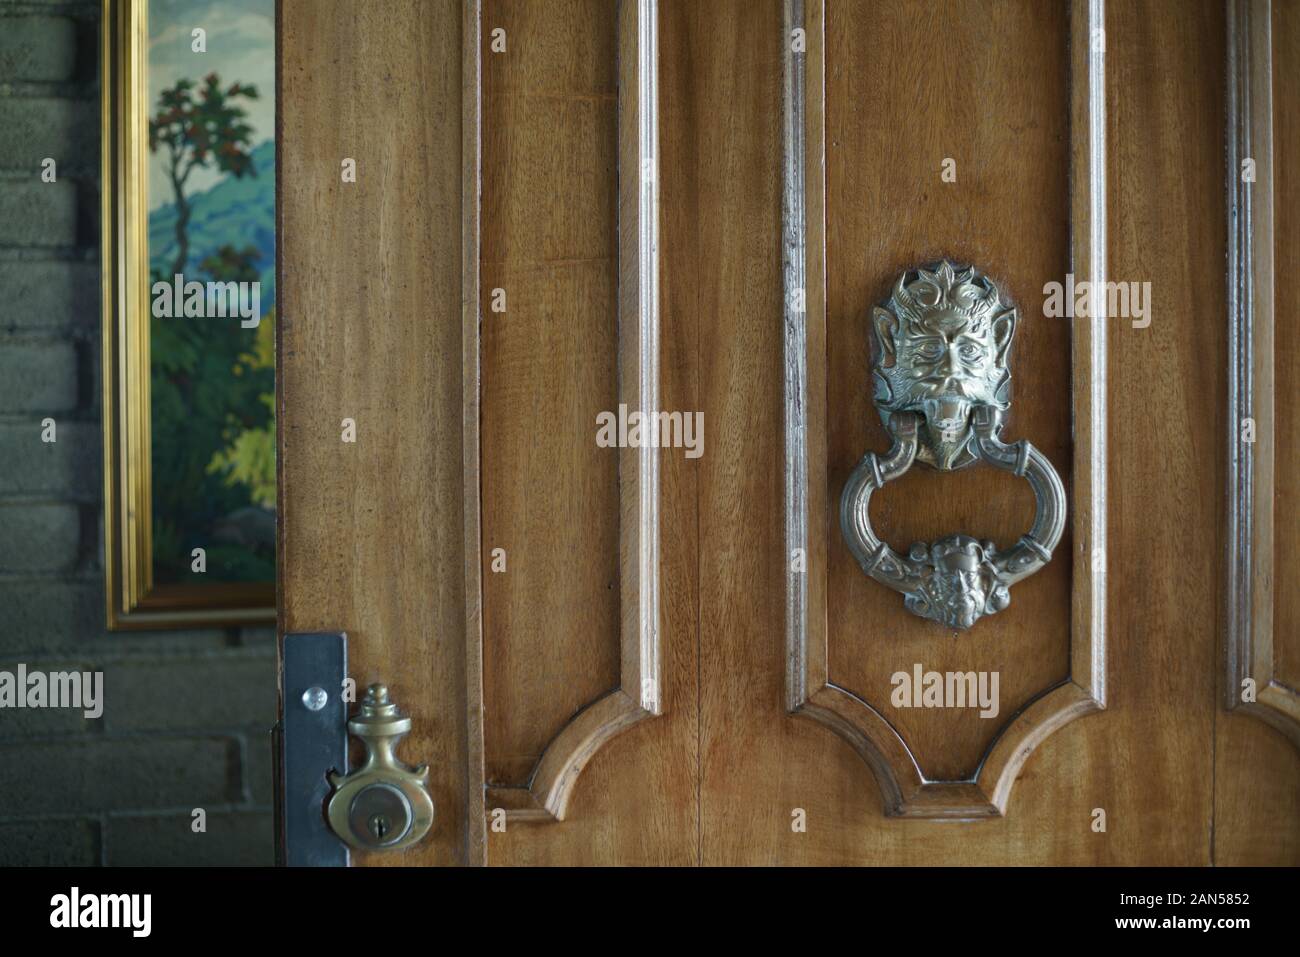 A bronce lion door handle in a heavy wooden door Stock Photo